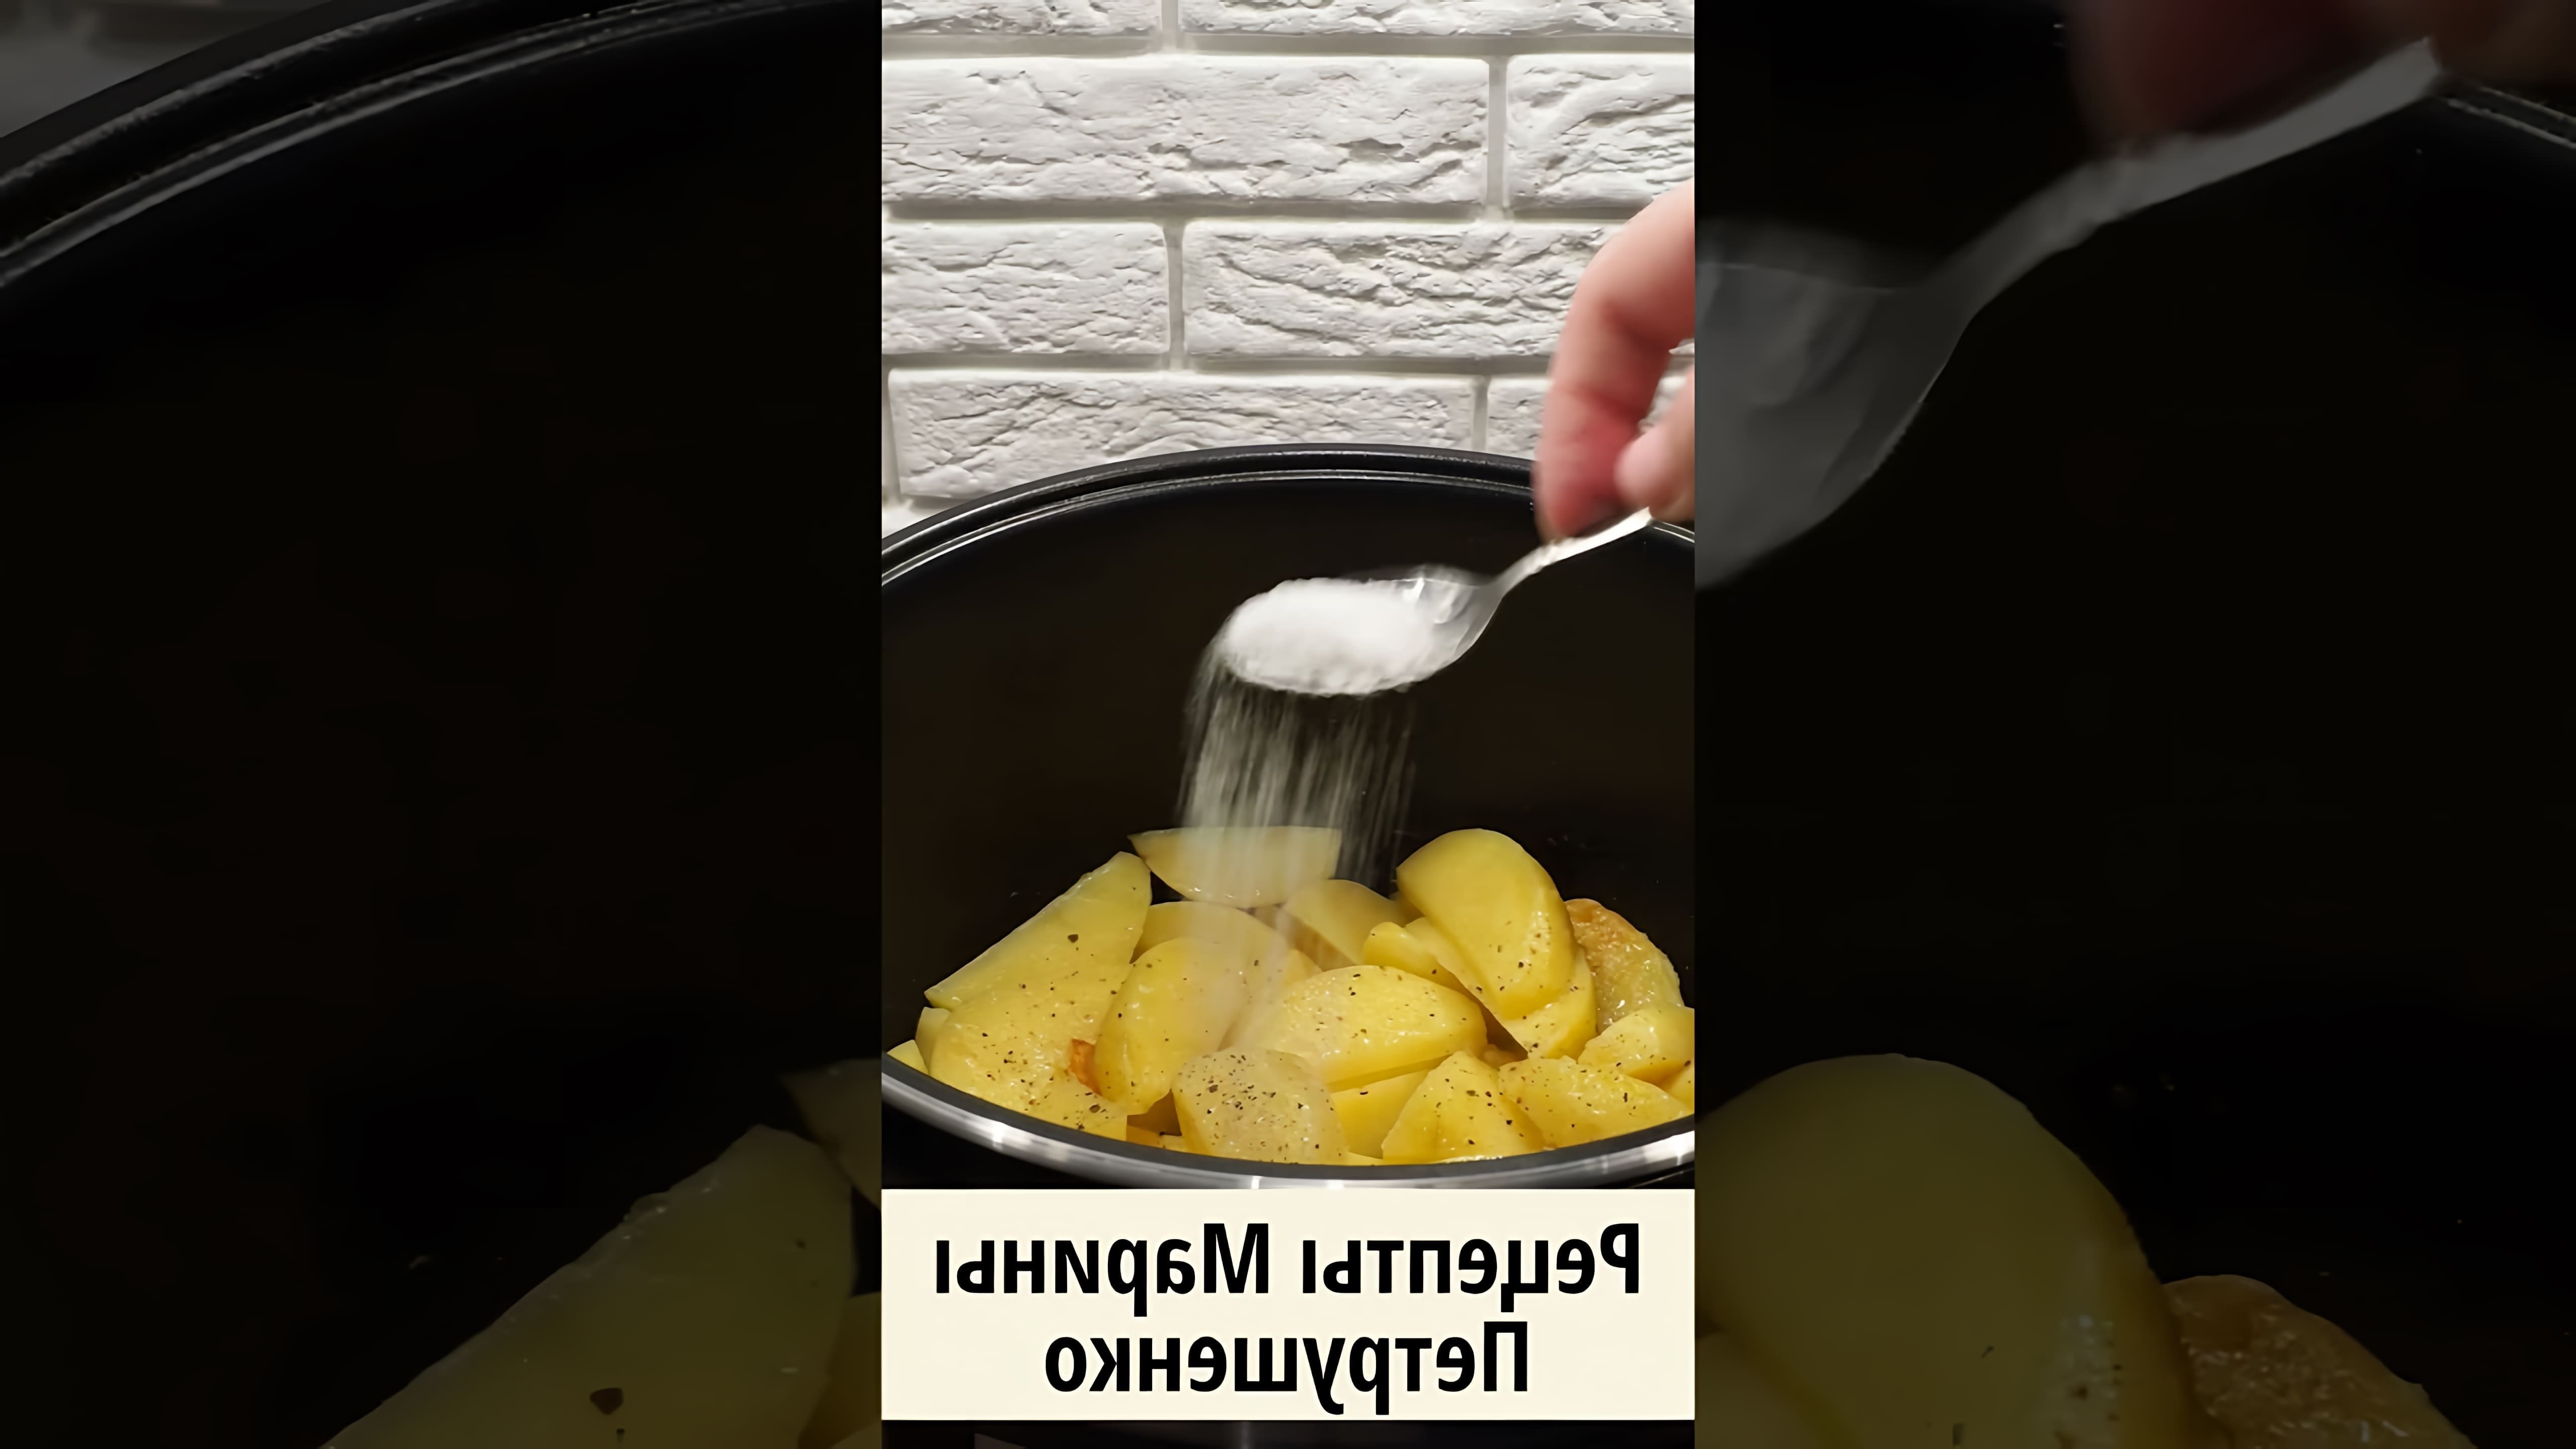 В этом видео демонстрируется рецепт приготовления вкусной картошки с чесноком в мультиварке